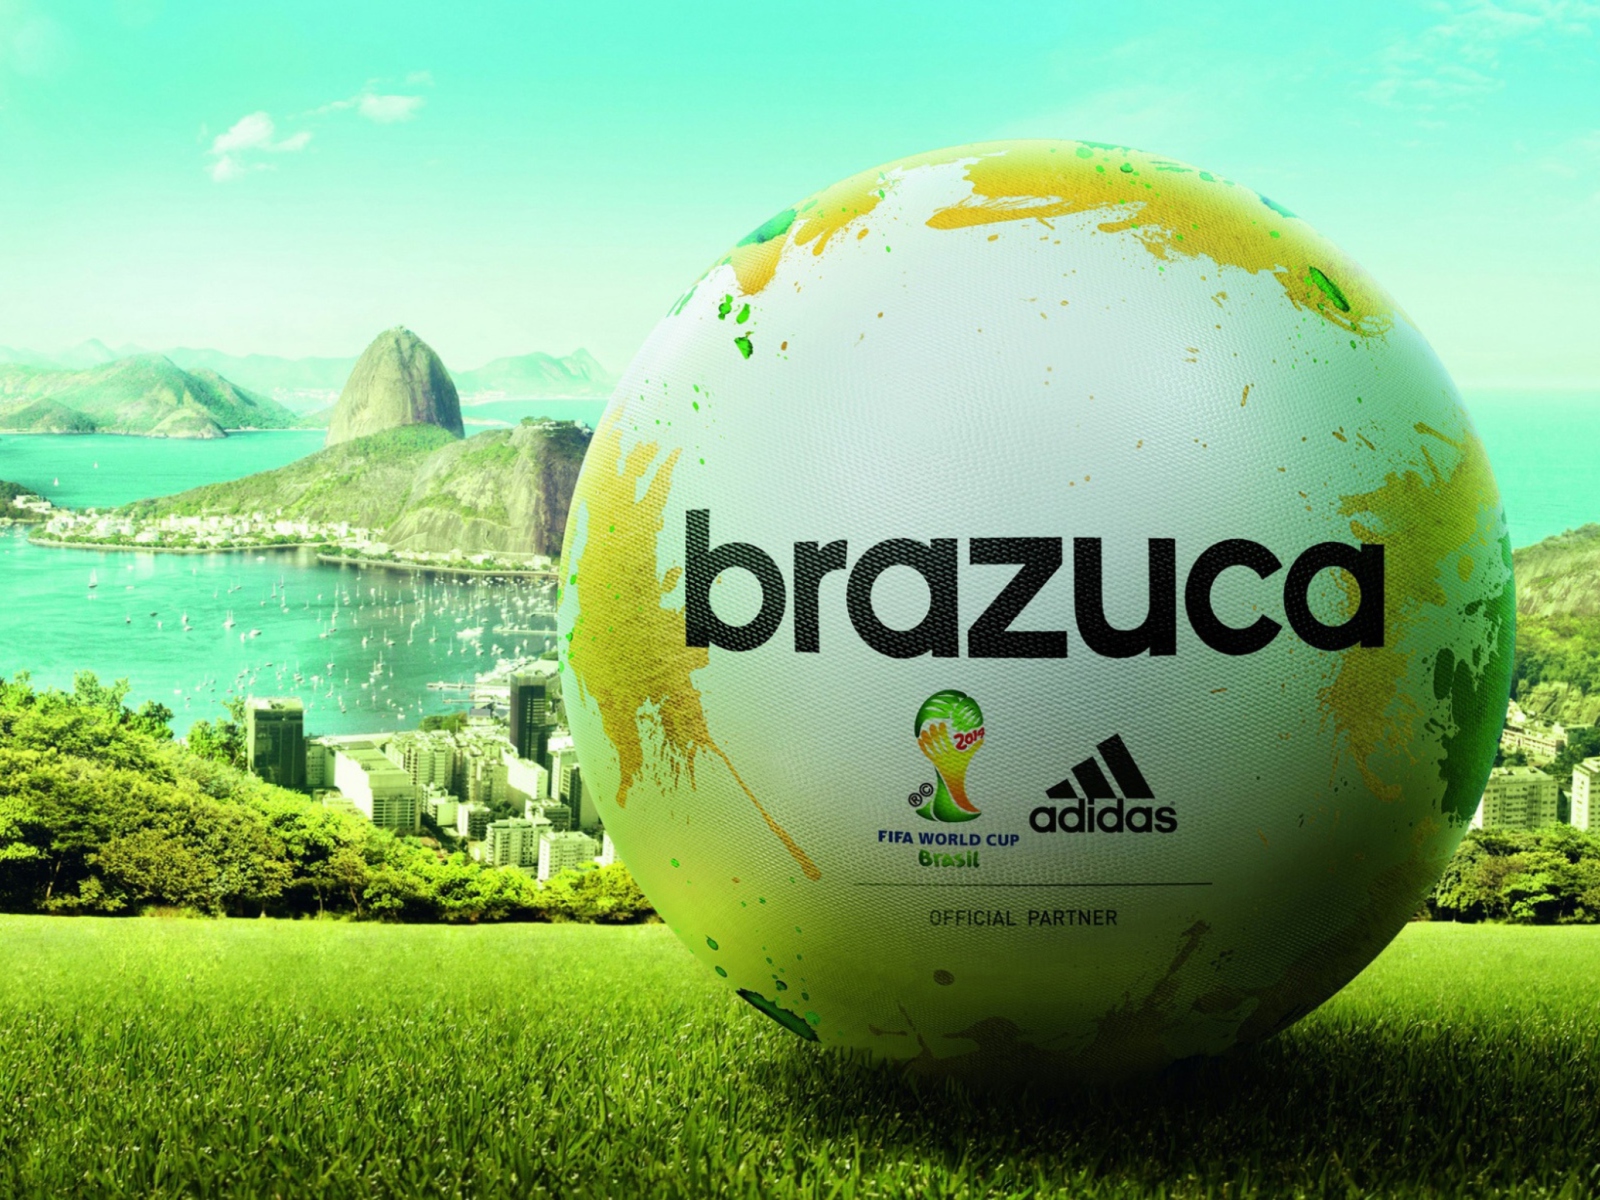 Das Adidas Brazuca Match Ball FIFA World Cup 2014 Wallpaper 1600x1200